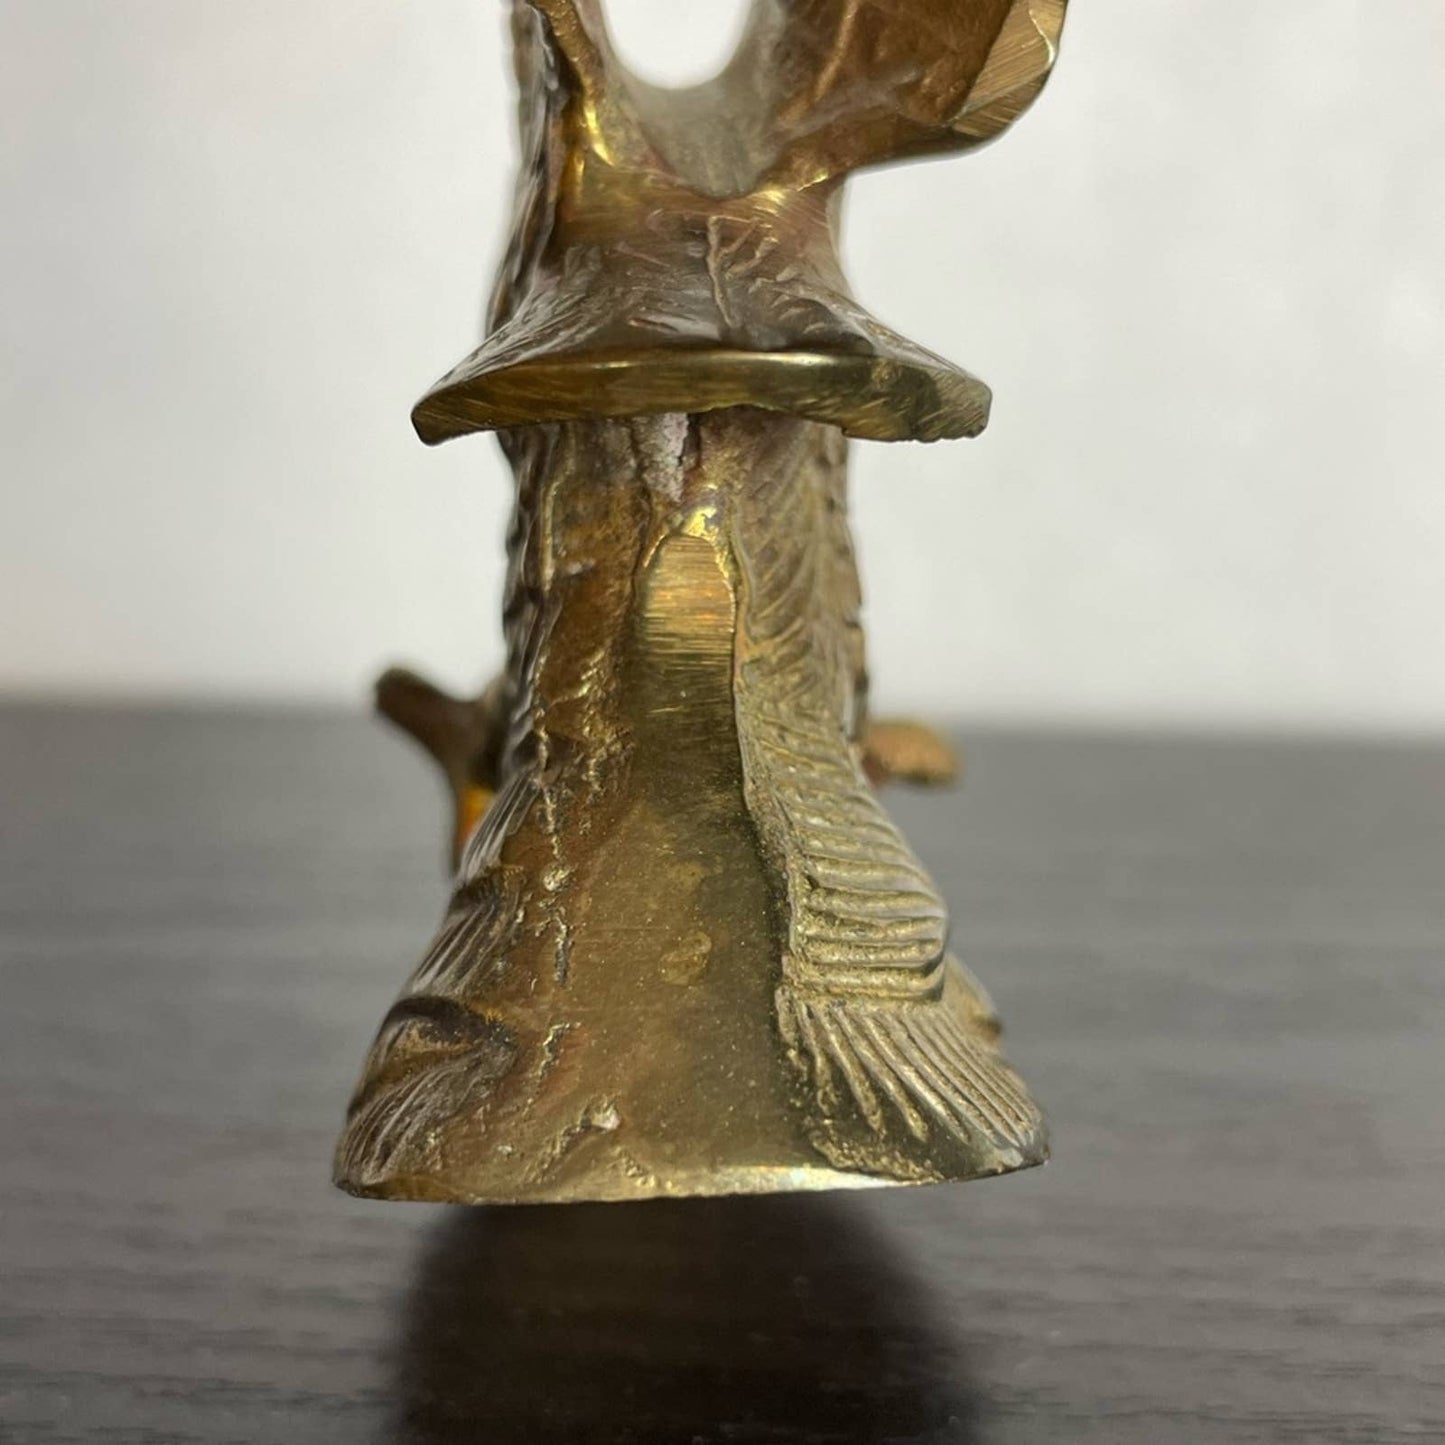 Vintage Brass Eagle Figurine Flying Soaring Bald Golden